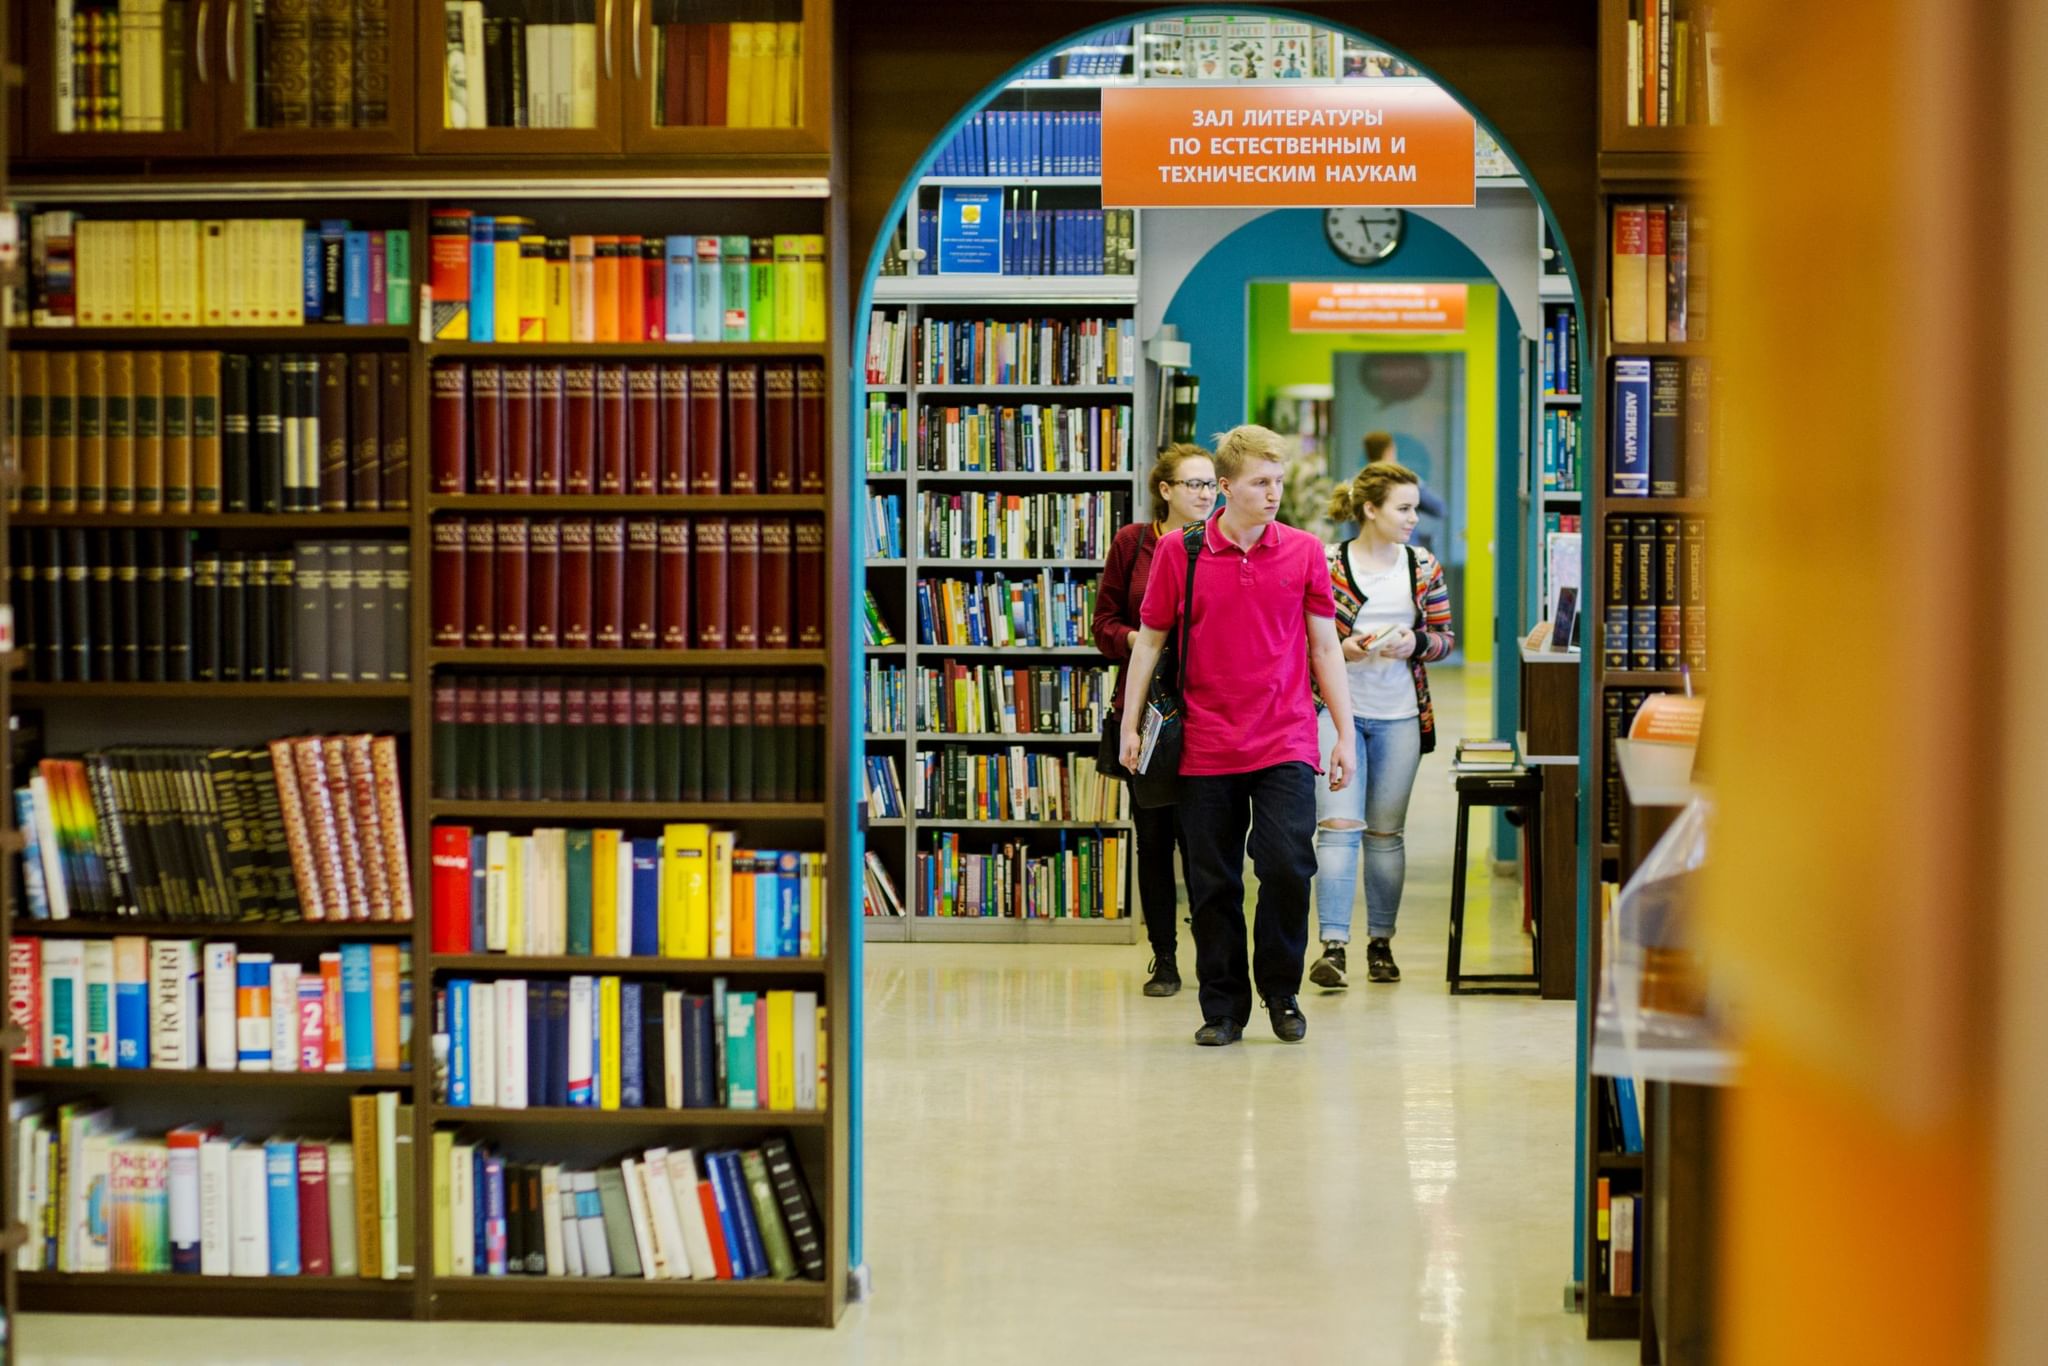 Год молодежи библиотека. РГБМ библиотека для молодёжи. Евразийская библиотека в Уфе. Читатели в библиотеке. Современная библиотека.